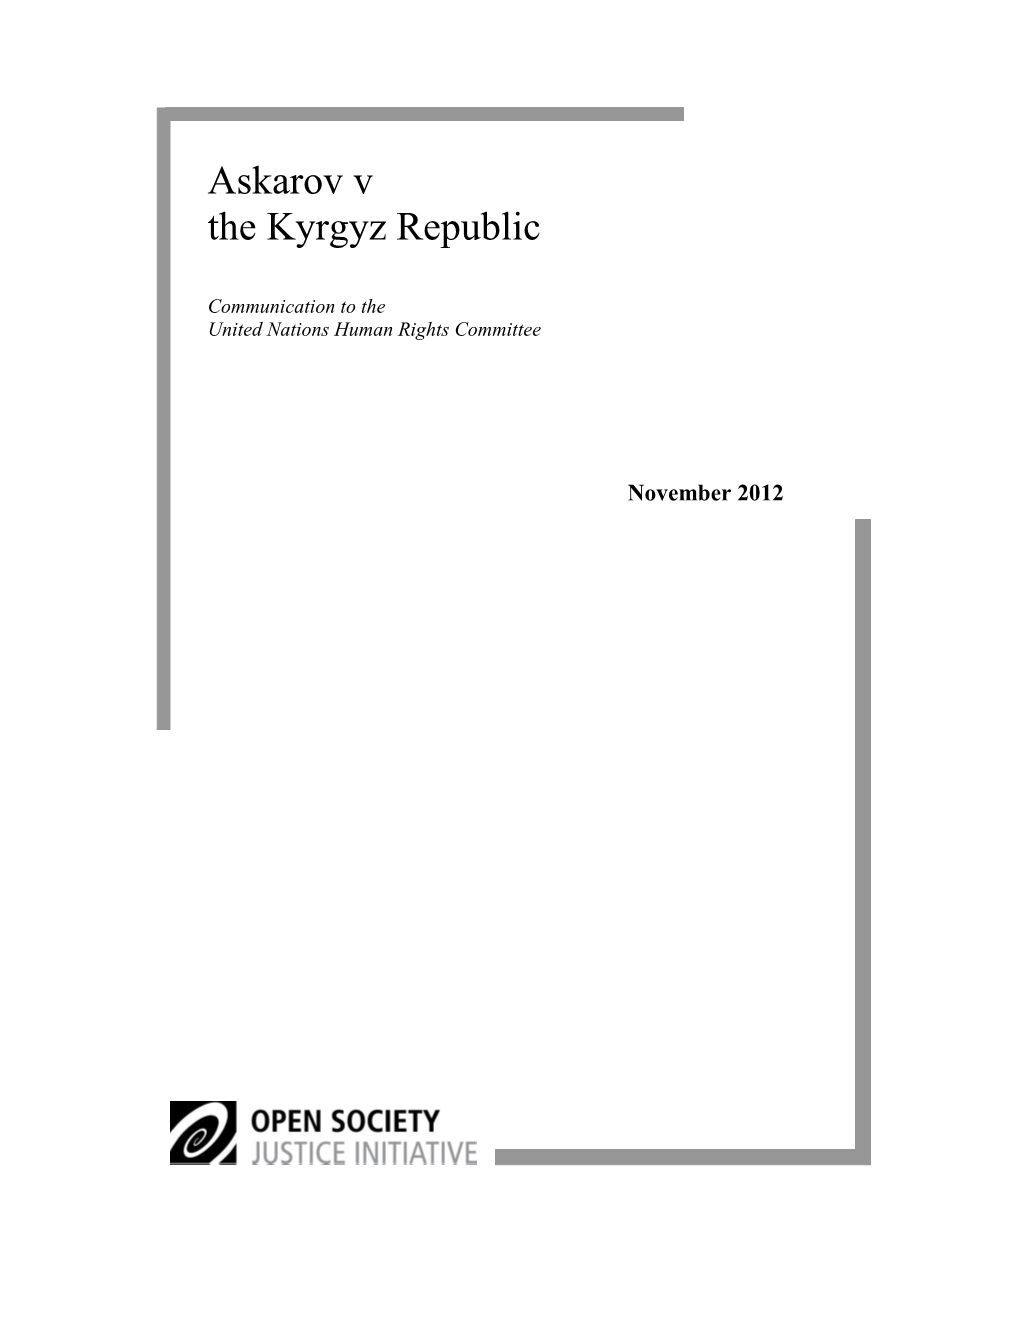 Askarov V the Kyrgyz Republic